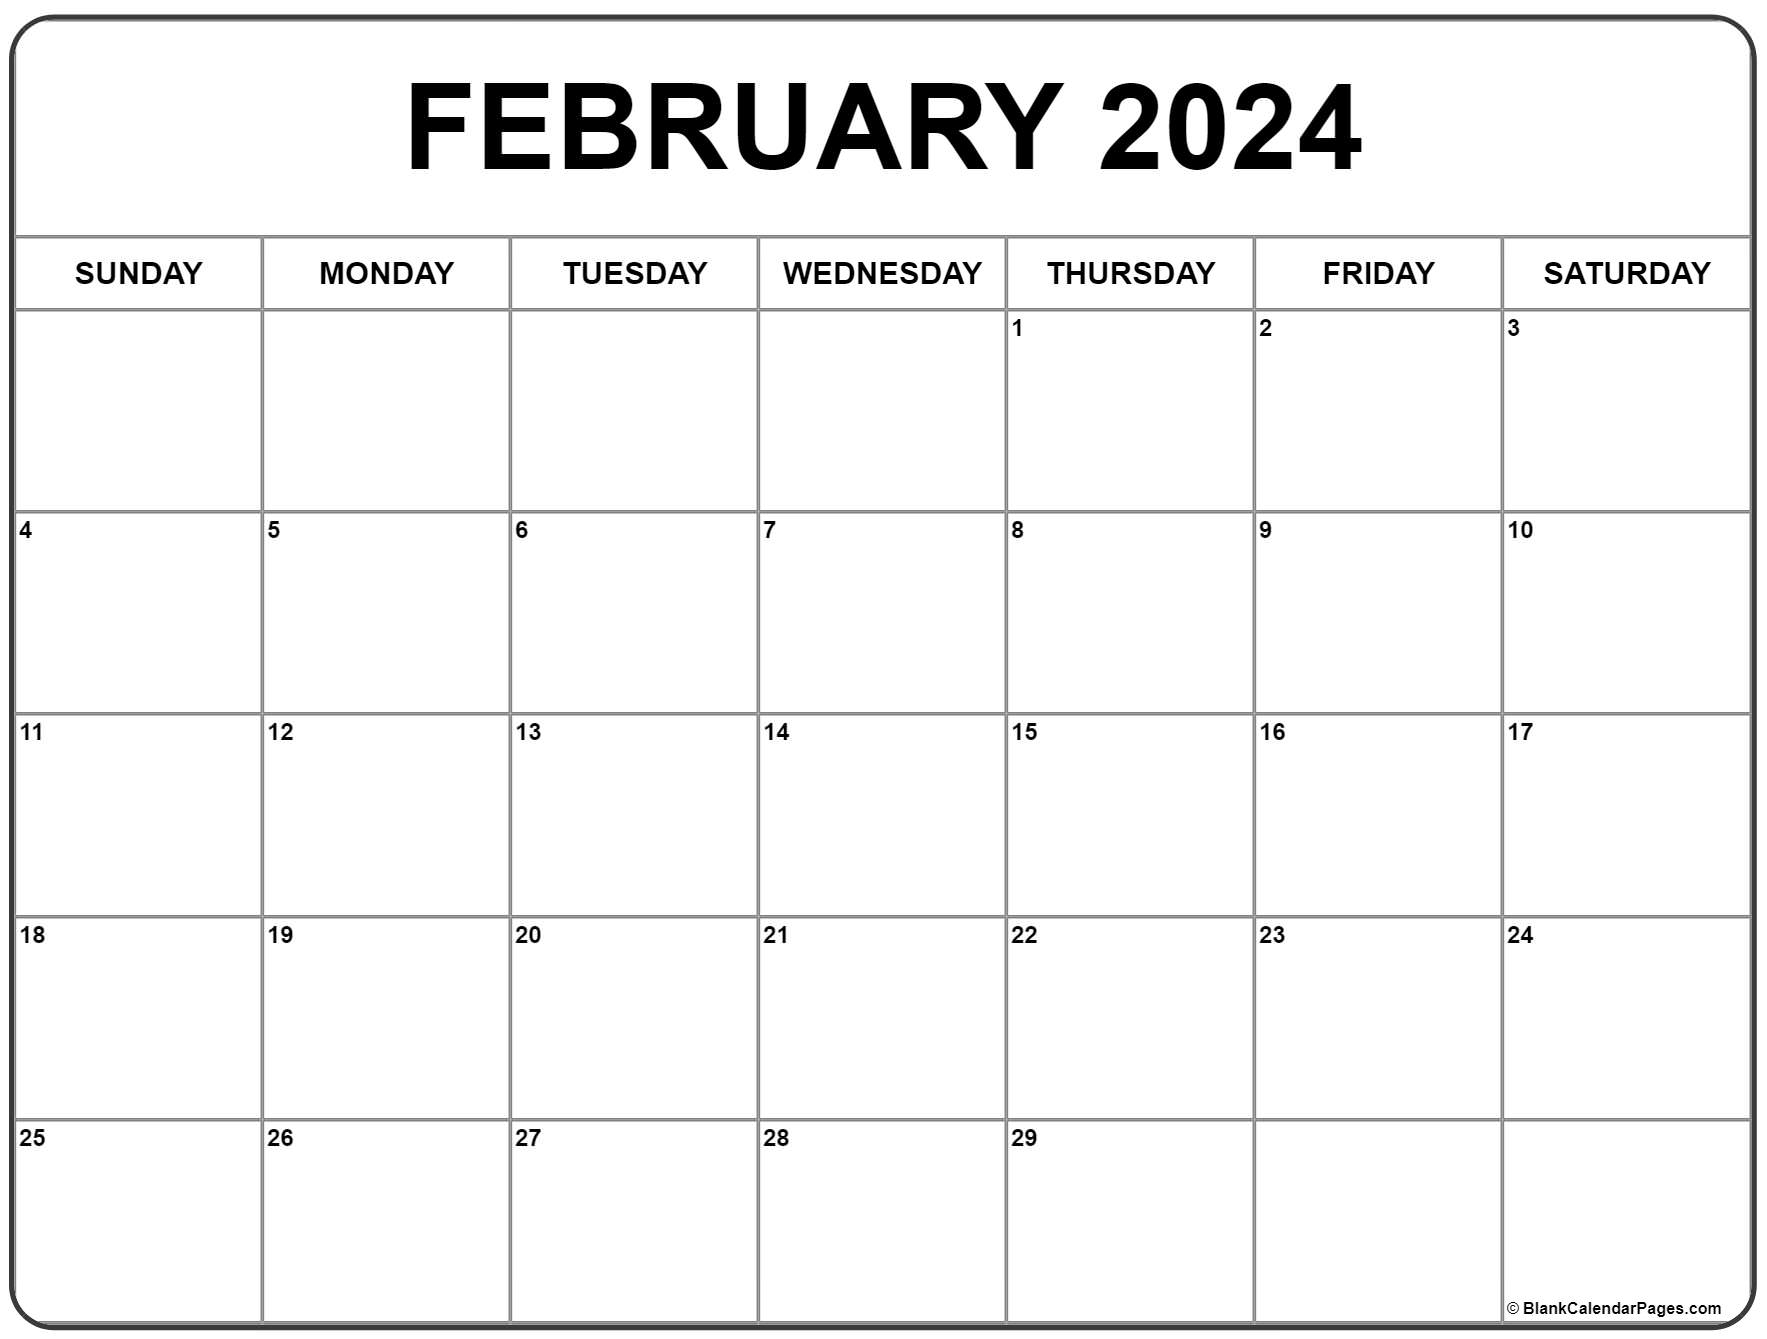 February 2024 Calendar | Free Printable Calendar for January February Printable Calendar 2024